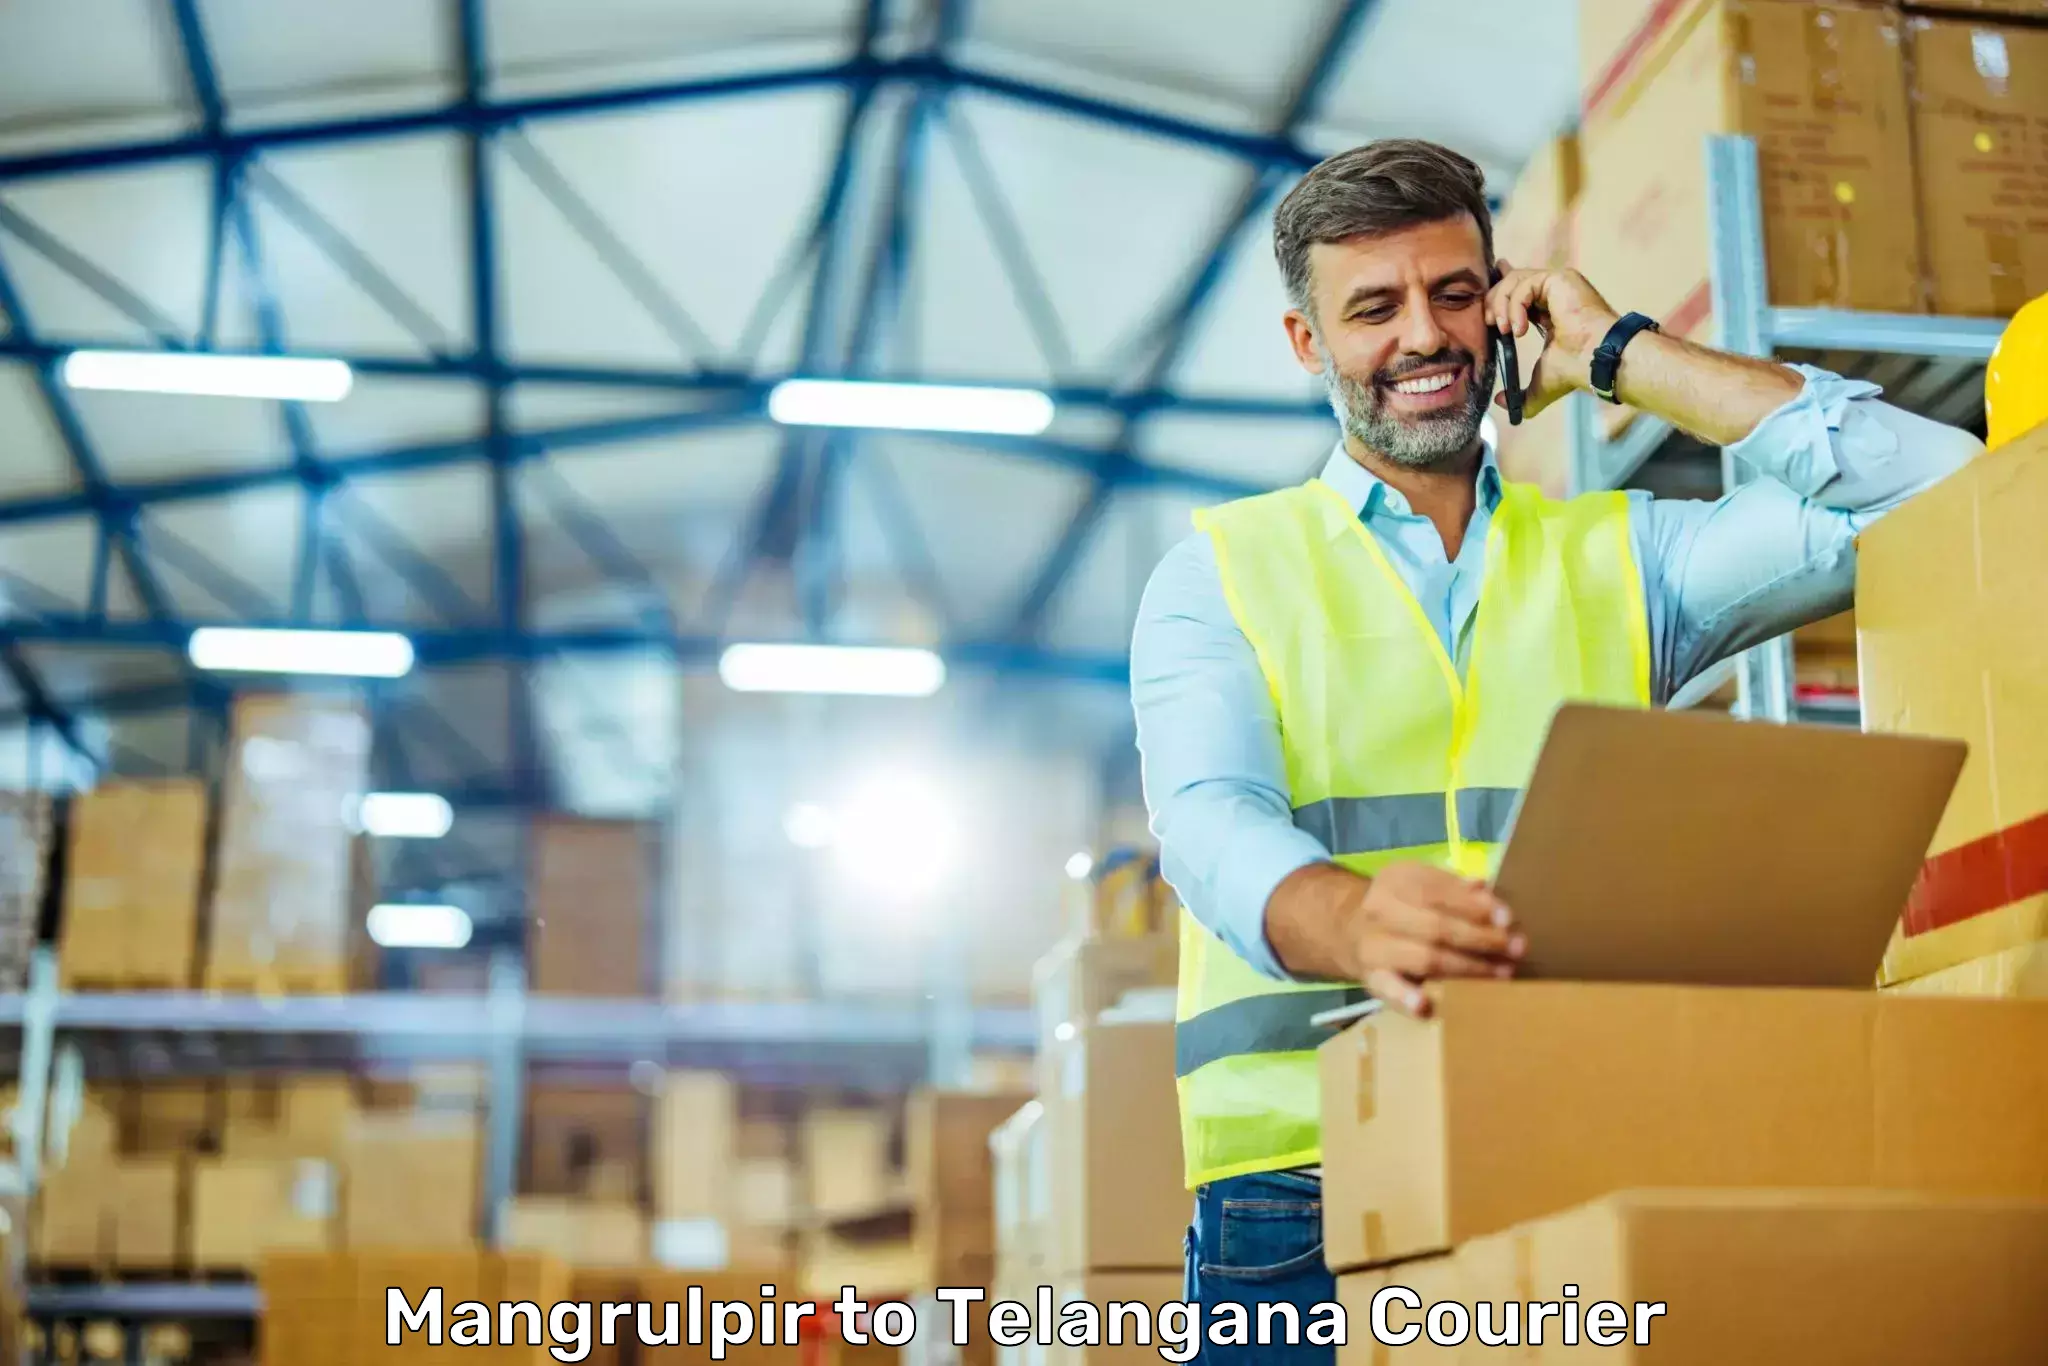 Efficient order fulfillment in Mangrulpir to Telangana